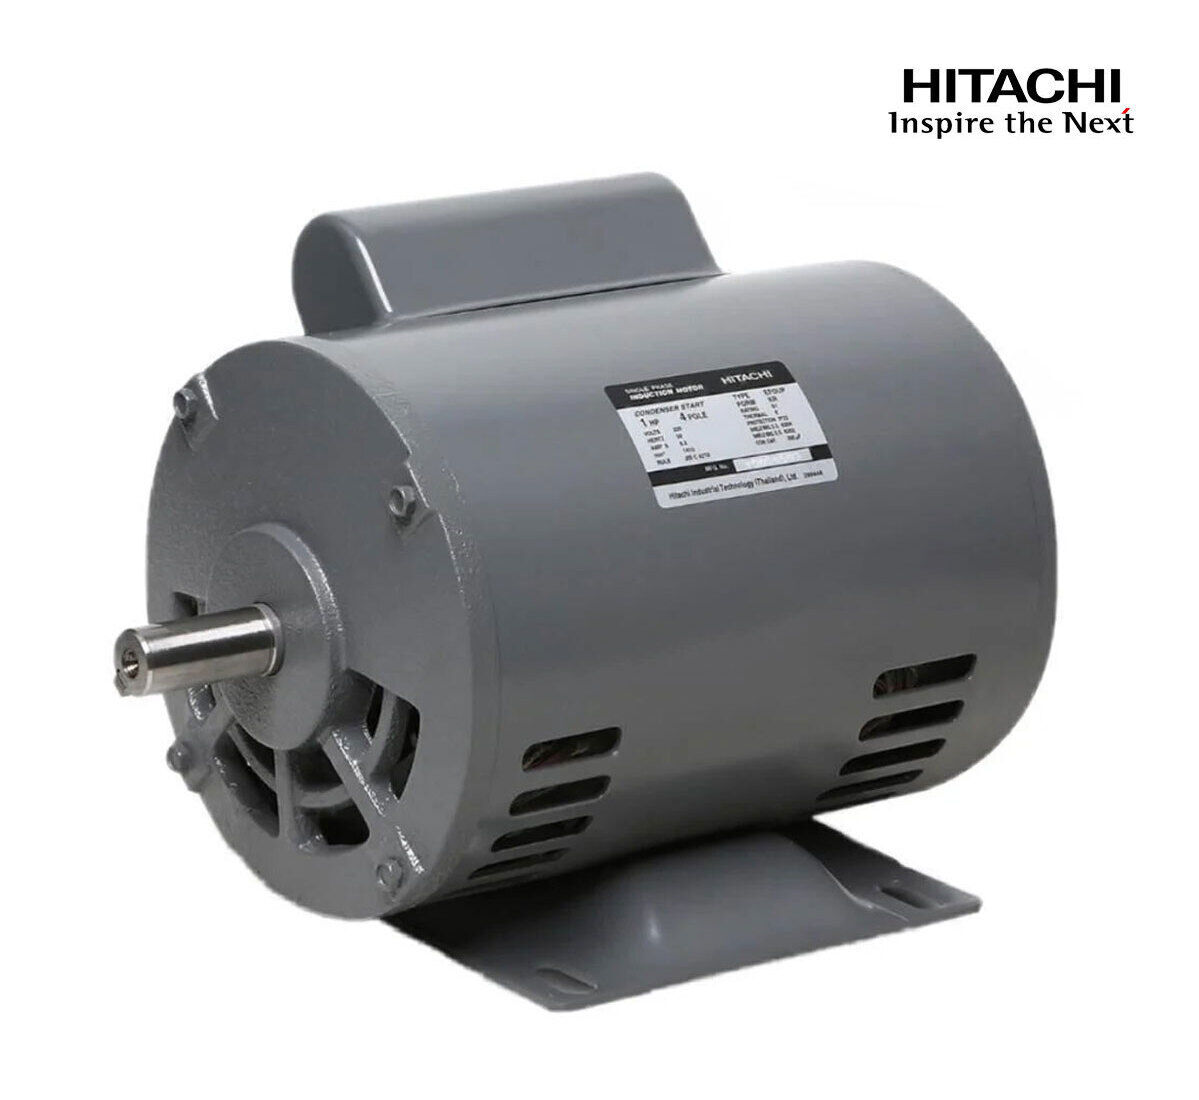 มอเตอร์ฮิตาชิของแท้ 100% HITACHI รุ่น EFOUP-KR กำลัง 1 แรงม้า (0.75 KW.) กำลังไฟฟ้าที่ใช้ 220V ความเร็วรอบตัวเปล่า 1450 RPM แกนเพลามอเตอร์ 19 MM.รับประกัน 3 ปี มีของพร้อมจัดส่งทุกวัน